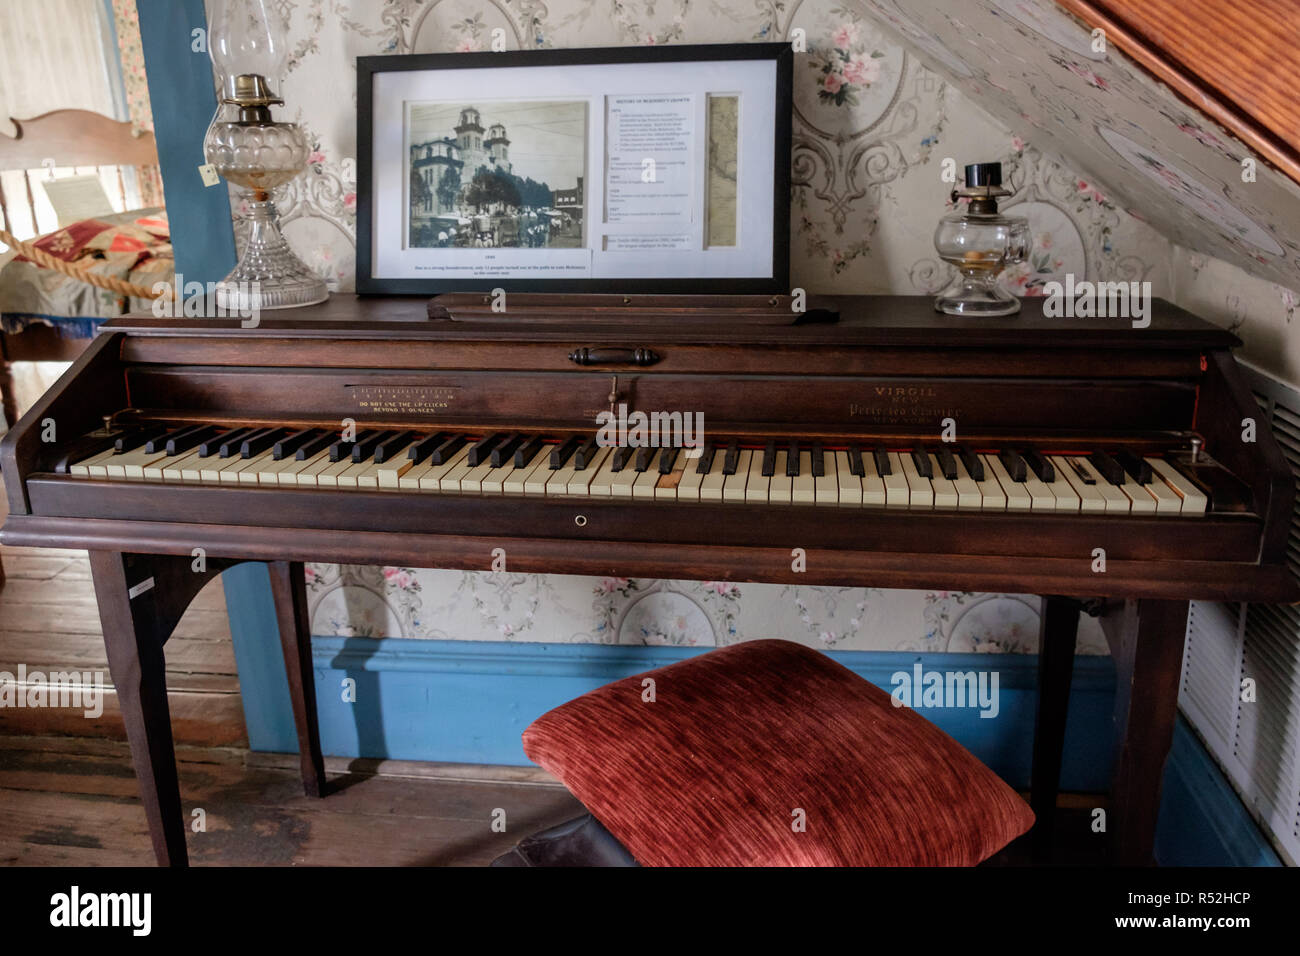 Virgilio antico pianoforte nella storica casa texano con vintage foto incorniciate, ornati salone di vetro lampade a olio e vintage carta da parati a fiori. McKinney,Texas. Foto Stock